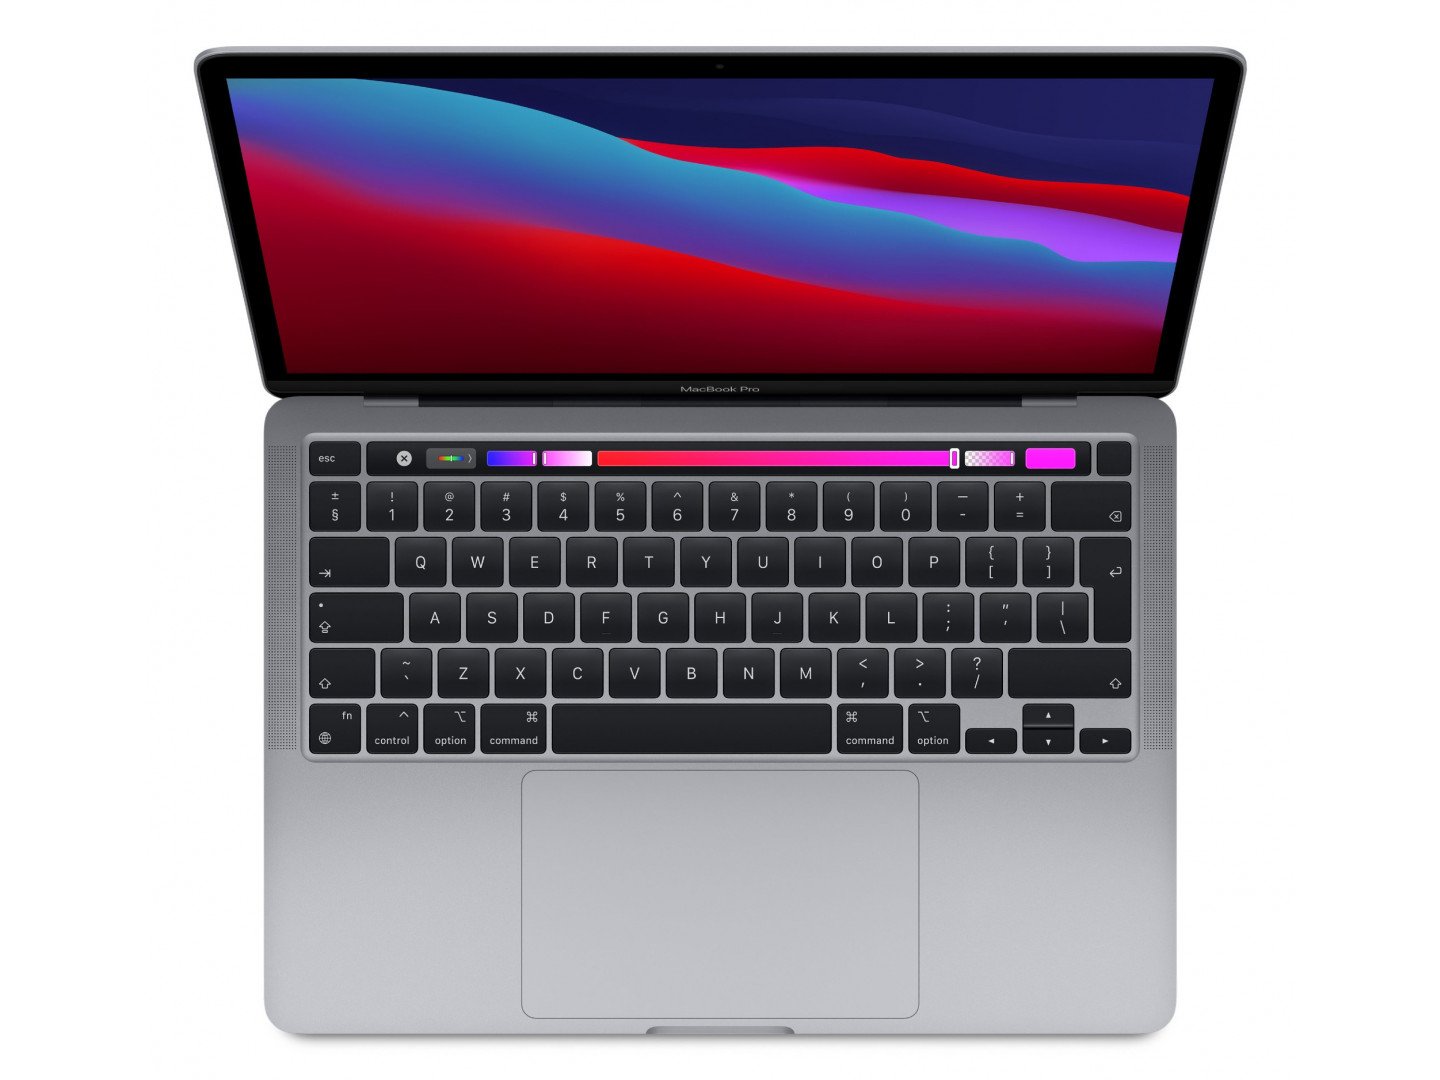 Ноутбук Apple MacBook Pro 13 M1 2020 (MYDC2) - зображення 2